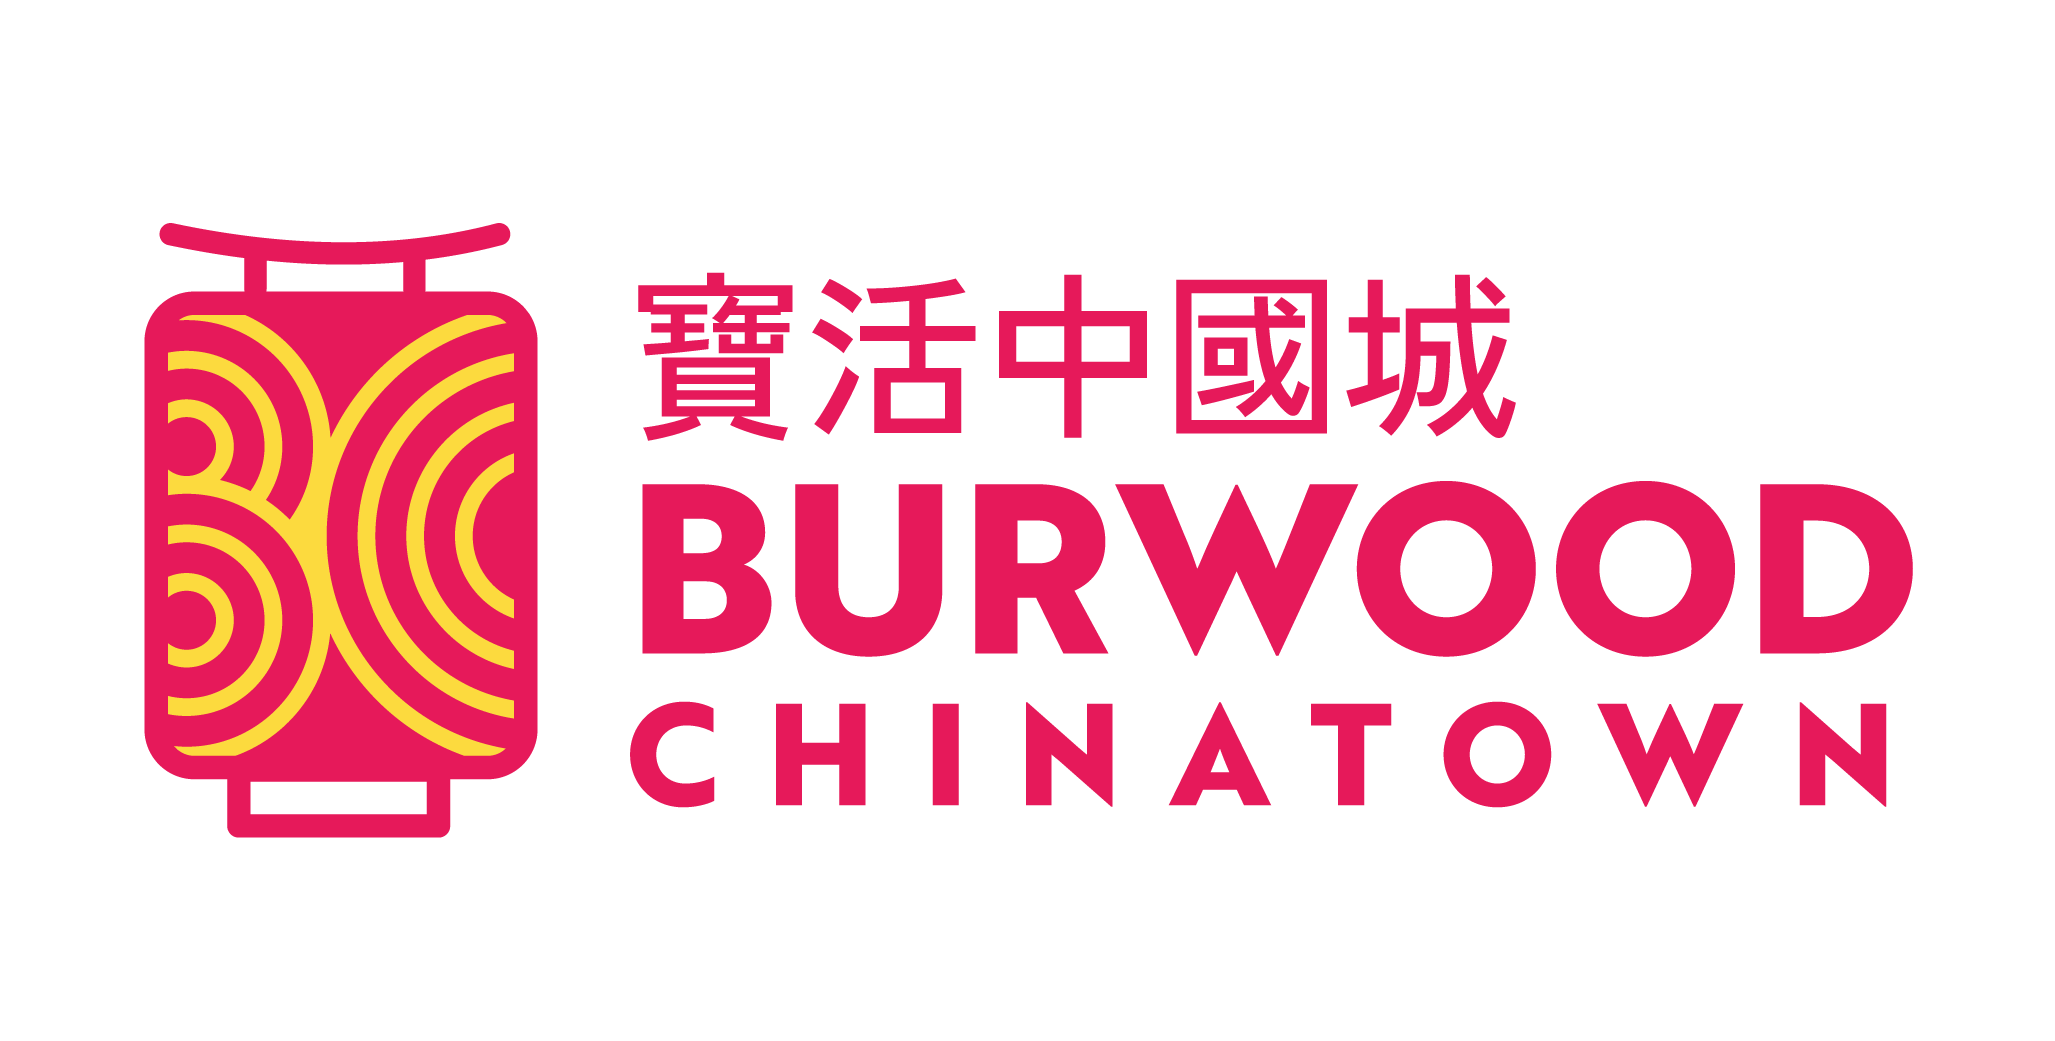 Burwood Chinatown